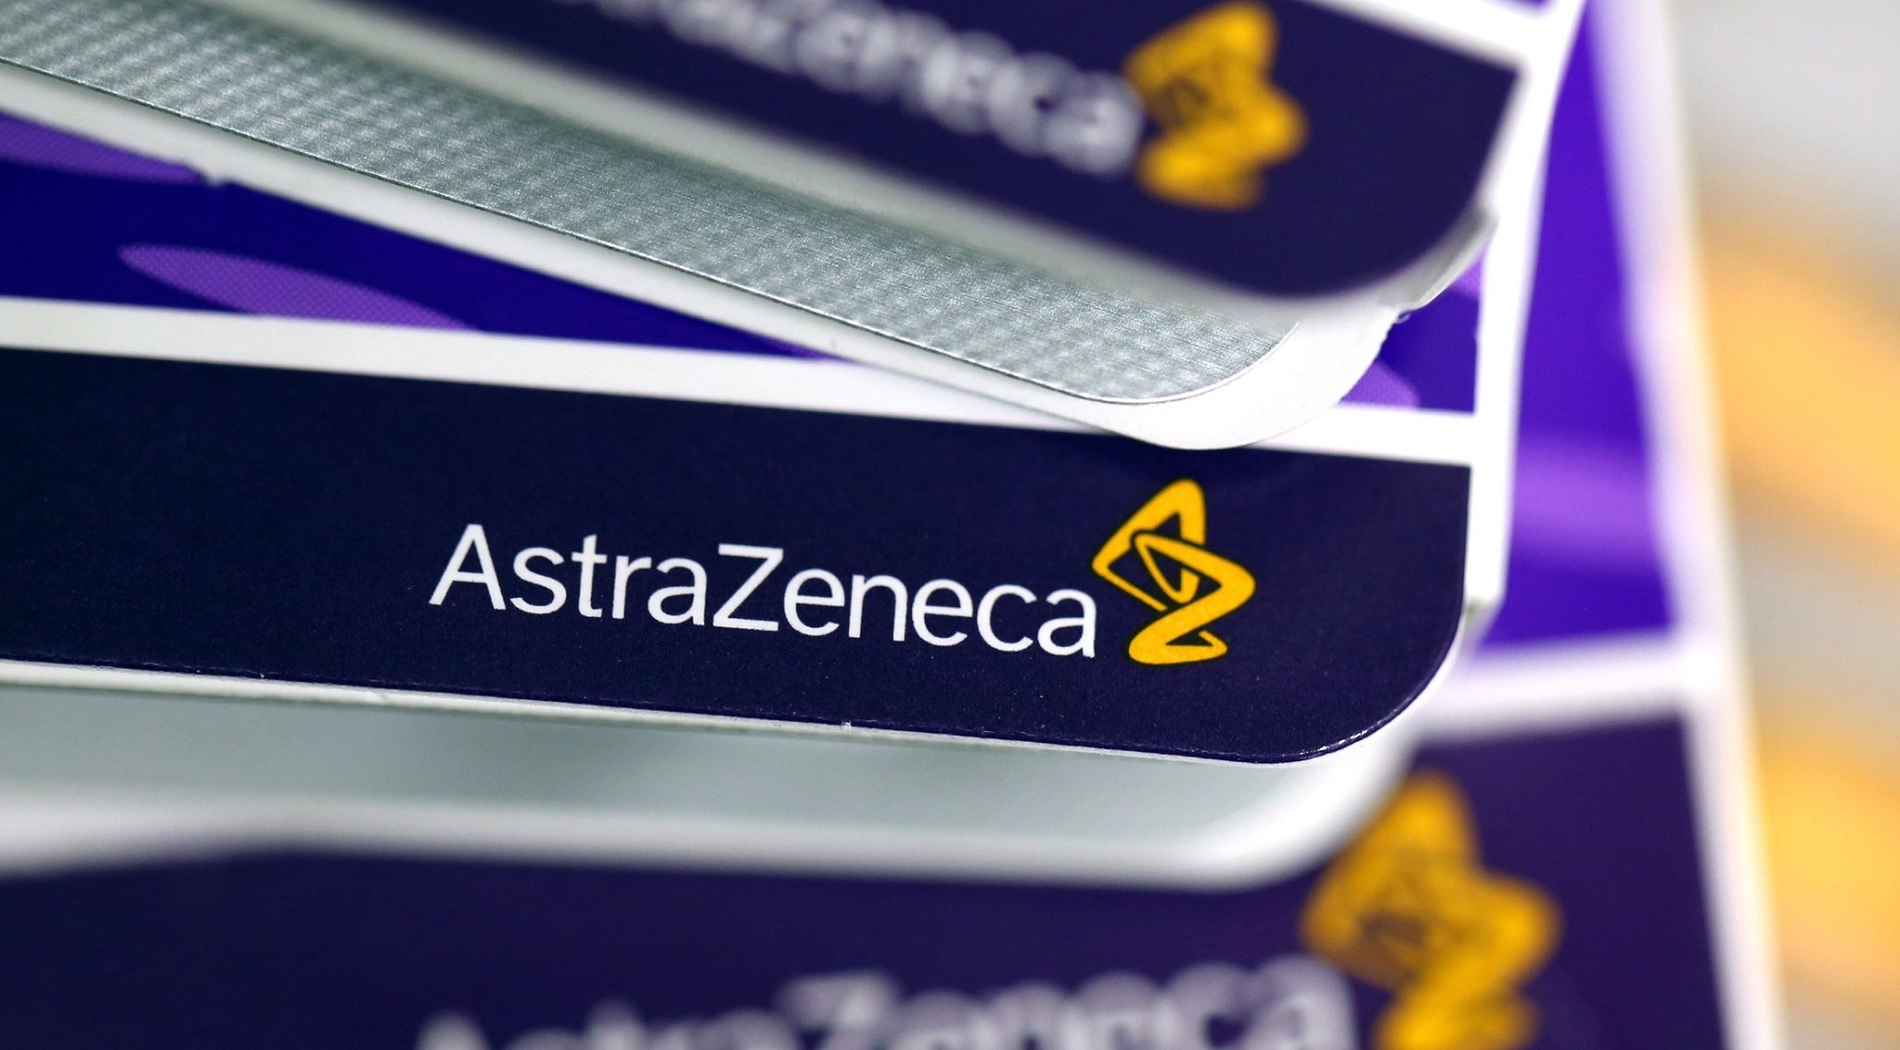 Η AstraZeneca επενδύει έως και 1 δισ. Δολάρια για μηδενική εκπομπή άνθρακα έως το 2025